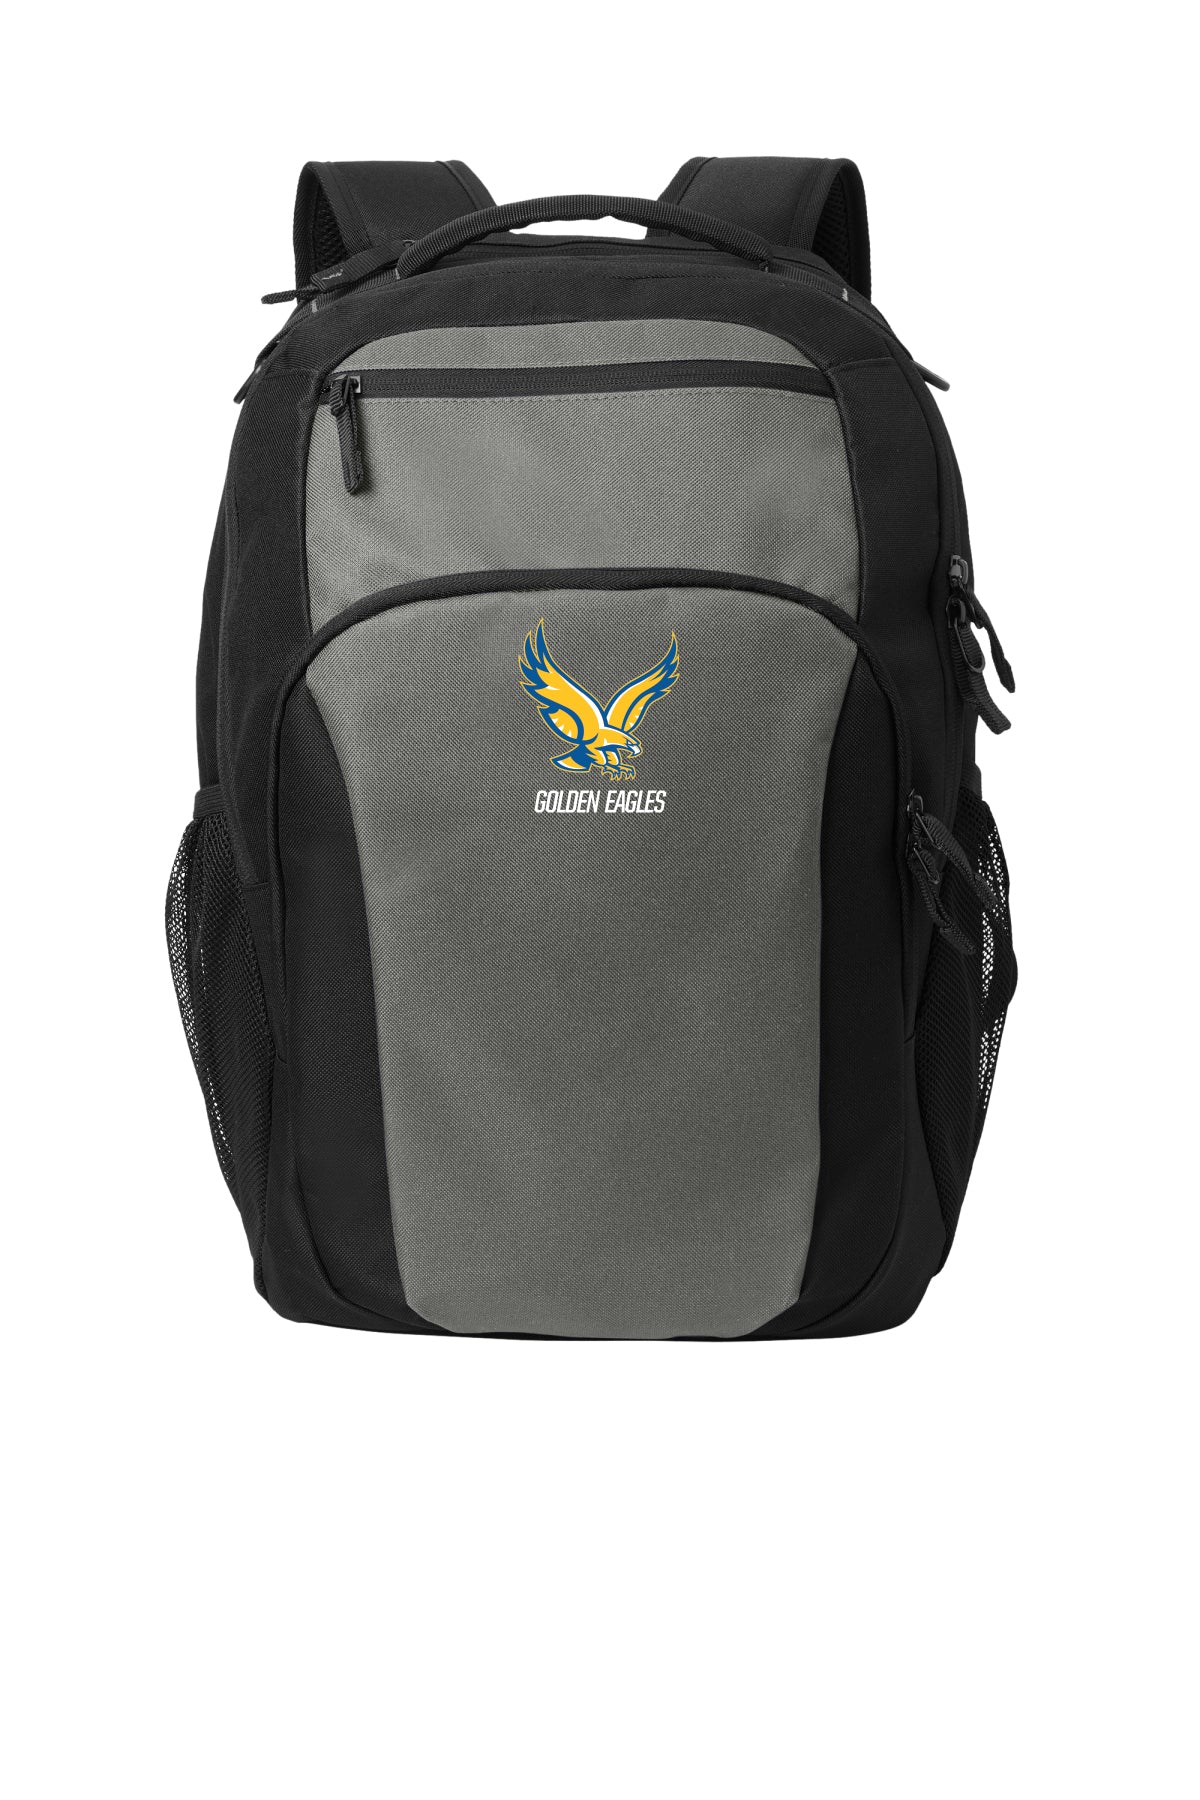 BG232 - SPIRIT - Port Authority® Transport Backpack